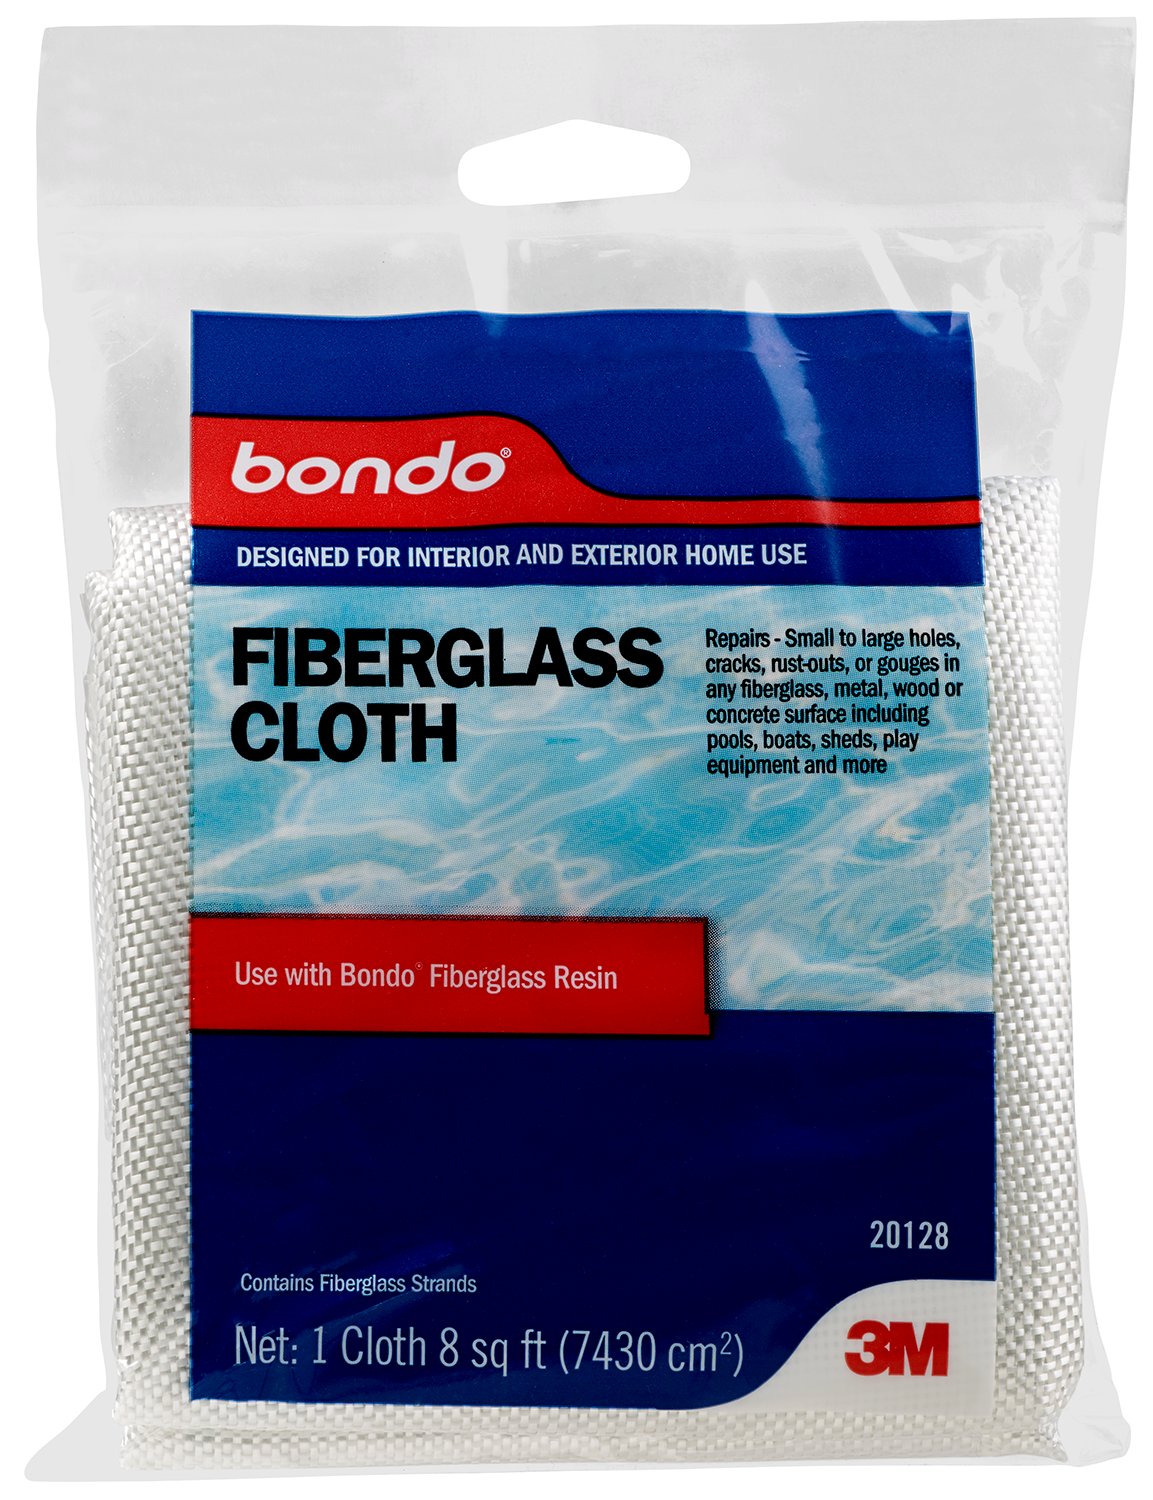 7010364420 - Bondo Fiberglass Cloth, 20128, 8 sq ft, 6 per case